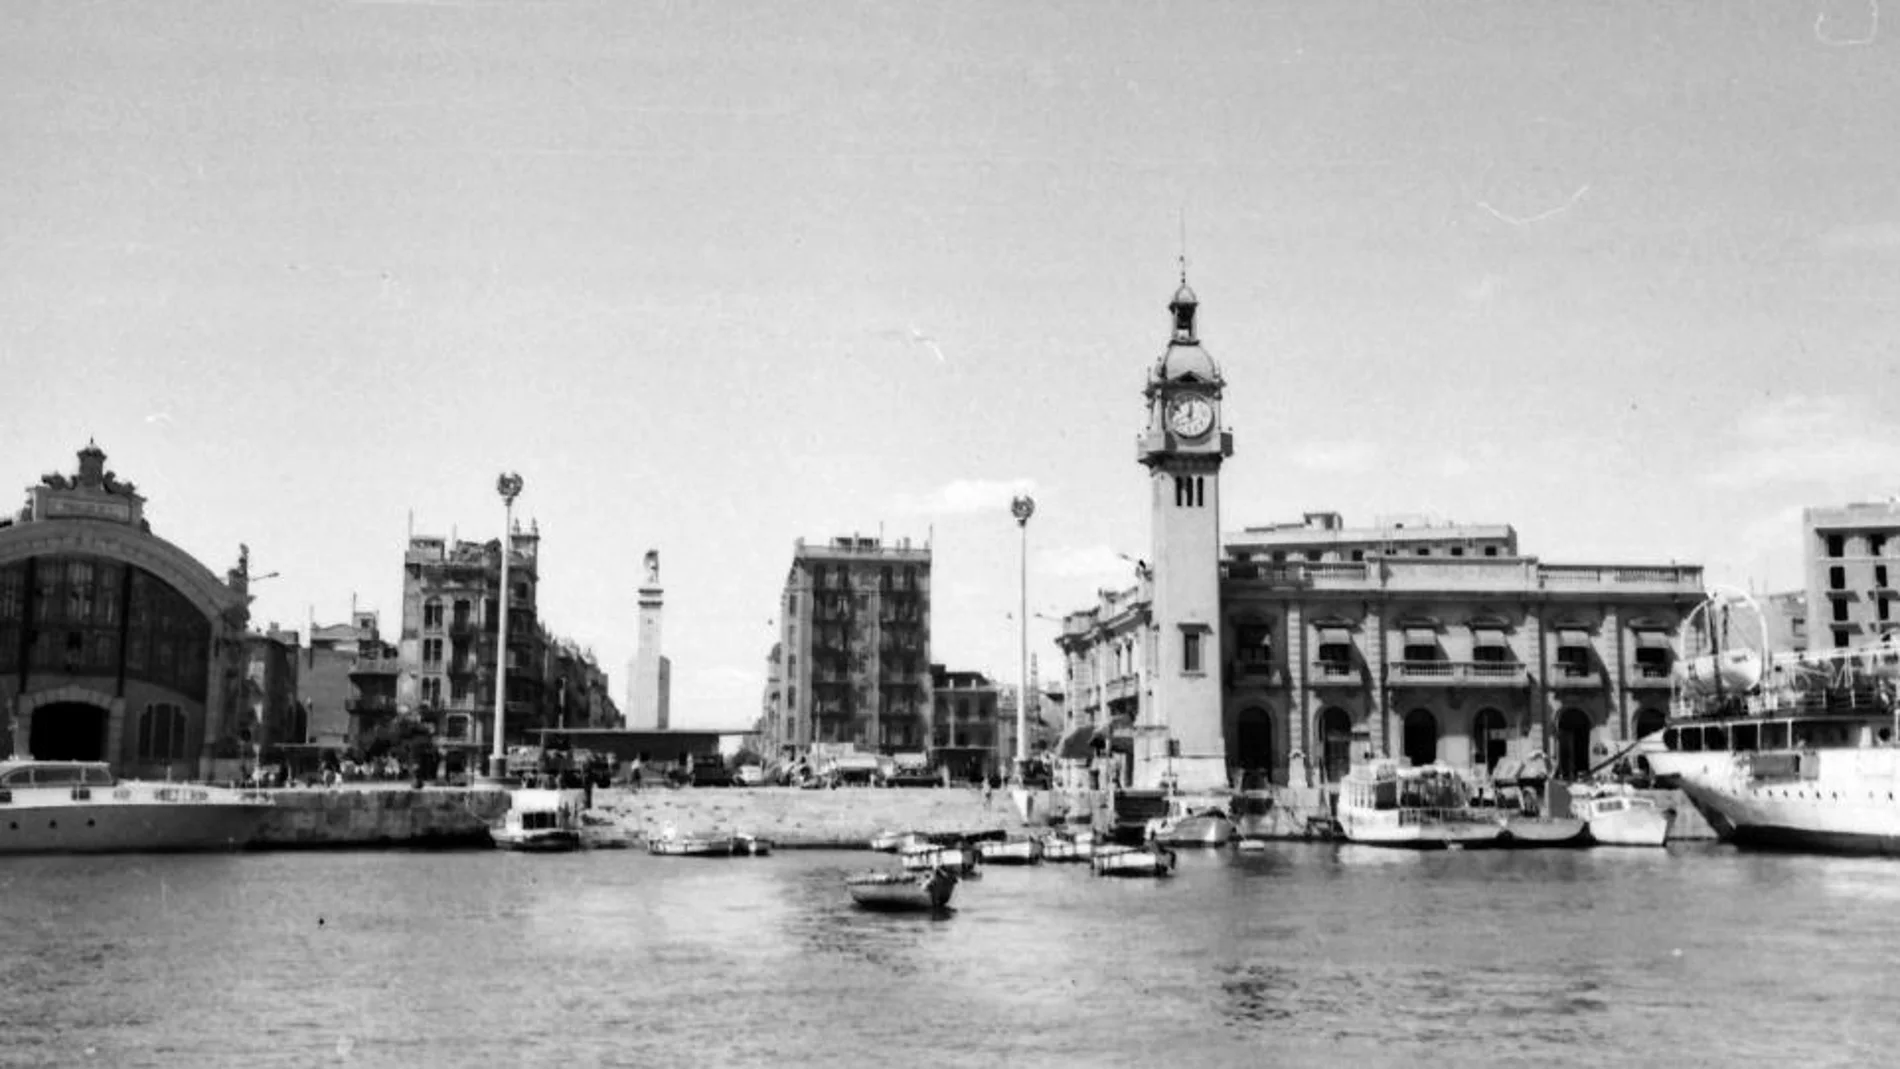 Imagen del aspecto que lucía la escalera a finales de los años sesenta. Ahora el puerto de Valencia estudiar recuperarla por el valor histórico que aporta para toda la ciudad en general y para las instalaciones portuarias en particular